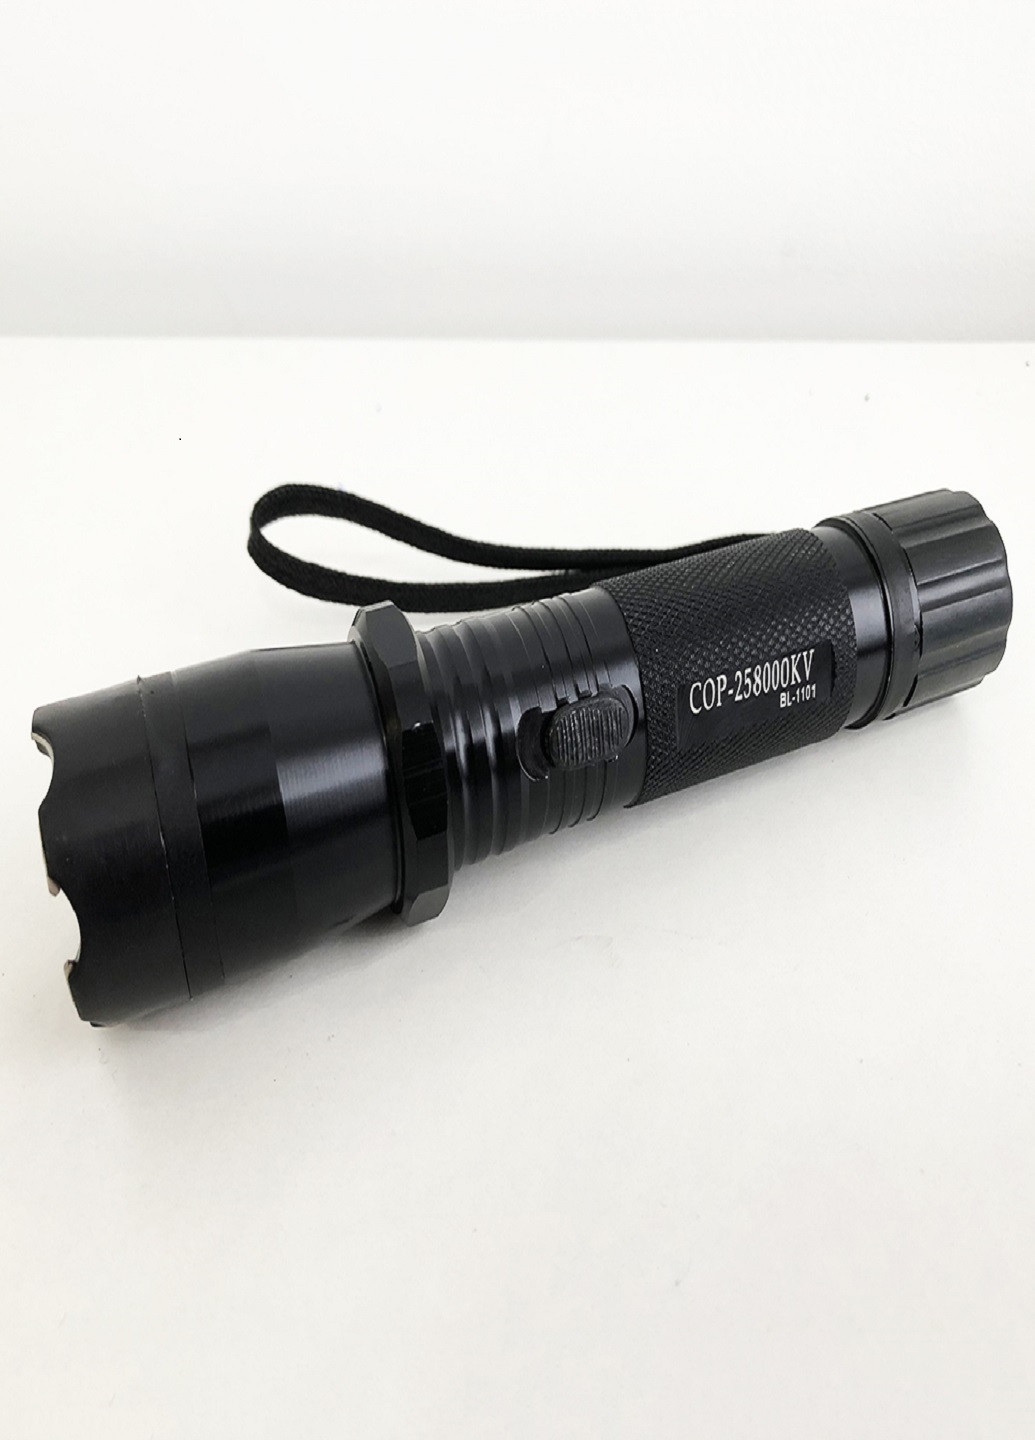 Фонарик BL 1101 c отпугивателем аккумуляторный фонарик для самозащиты VTech (252814620)